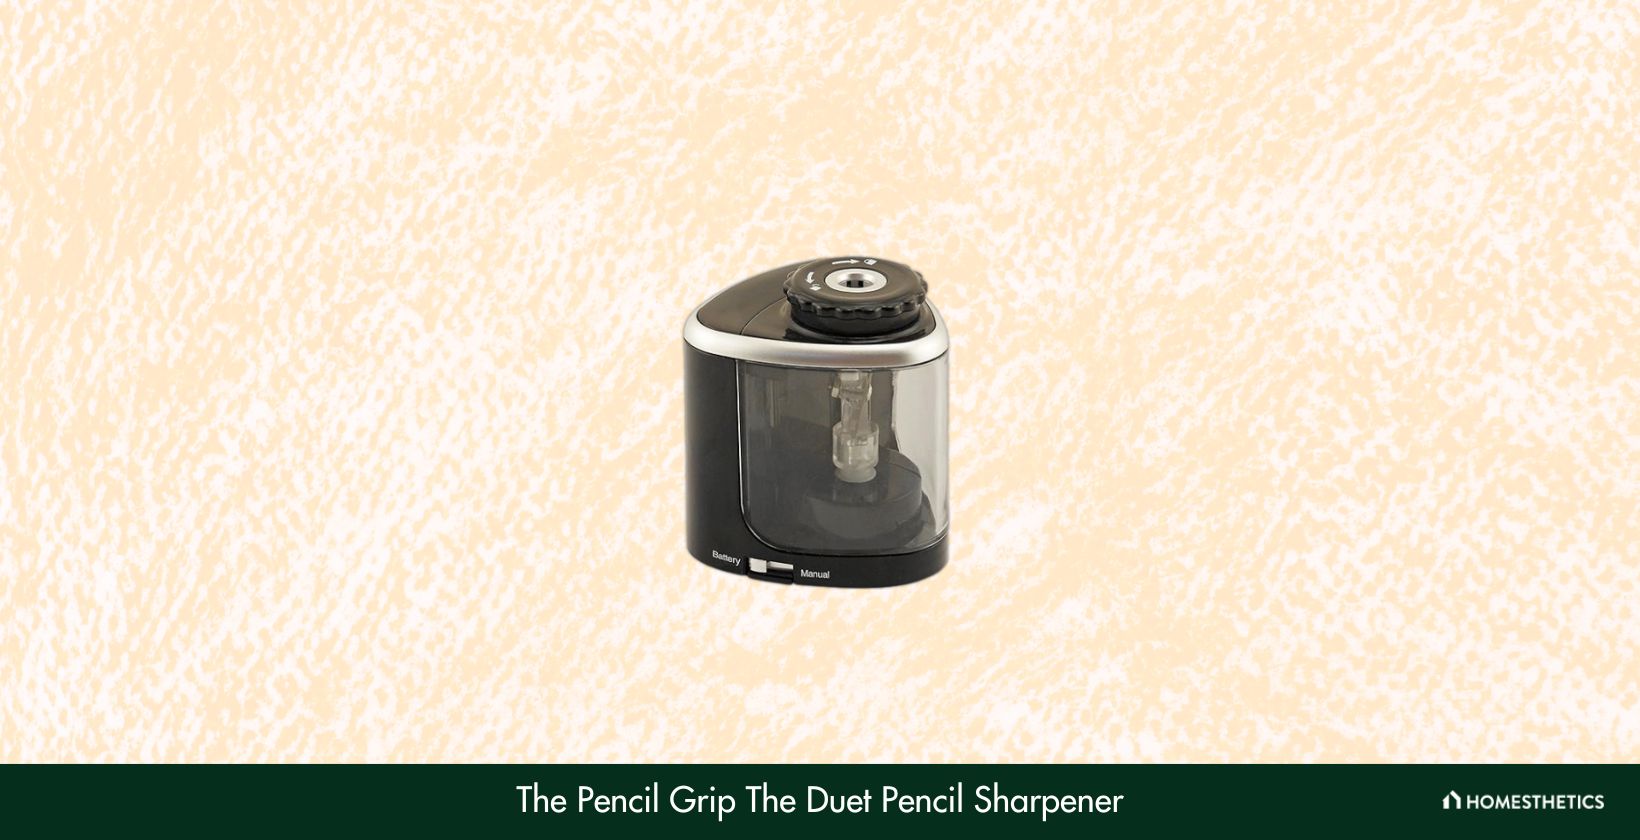 The Pencil Grip The Duet Pencil Sharpener TPG 364B